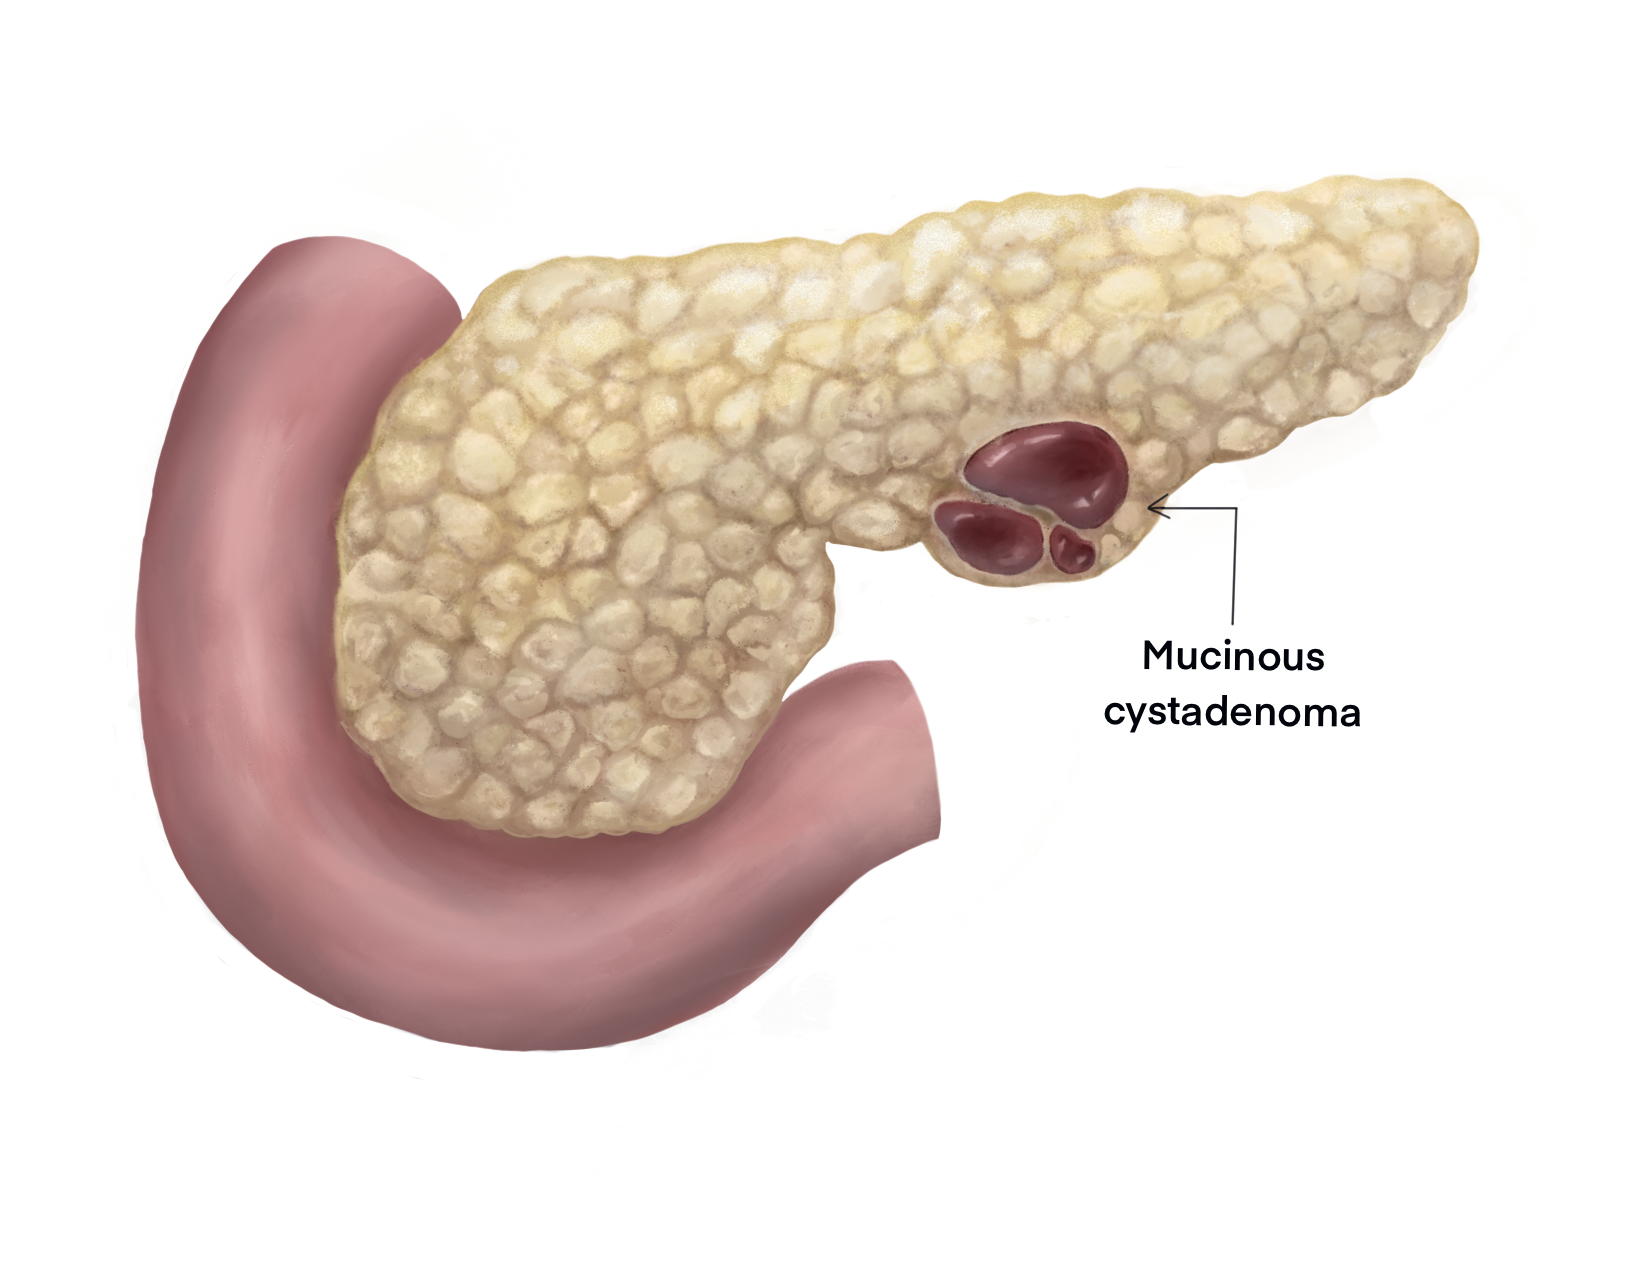 Illustration of mucinous cystadenoma